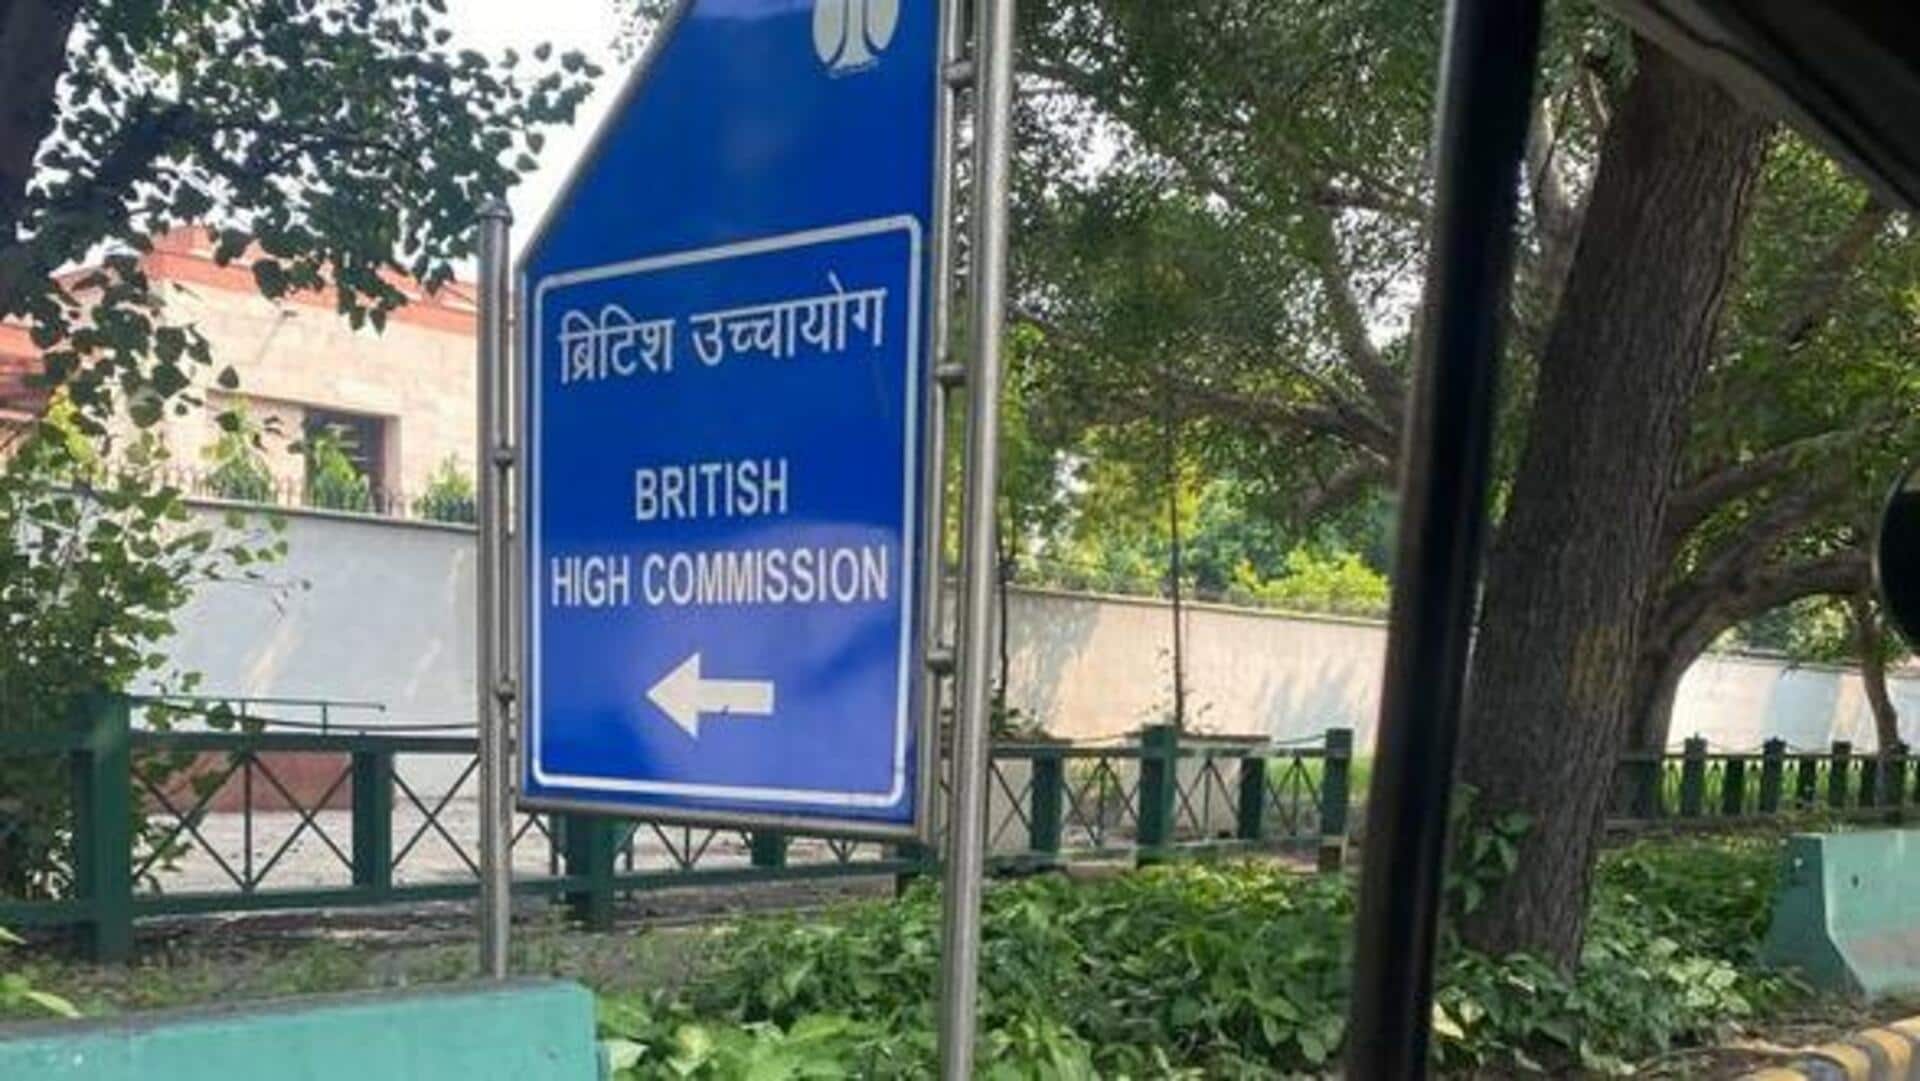 दिल्ली: ब्रिटिश उच्चायोग के बाहर से बैरिकेड हटे, लंदन की घटना के बाद बढ़ी थी सुरक्षा